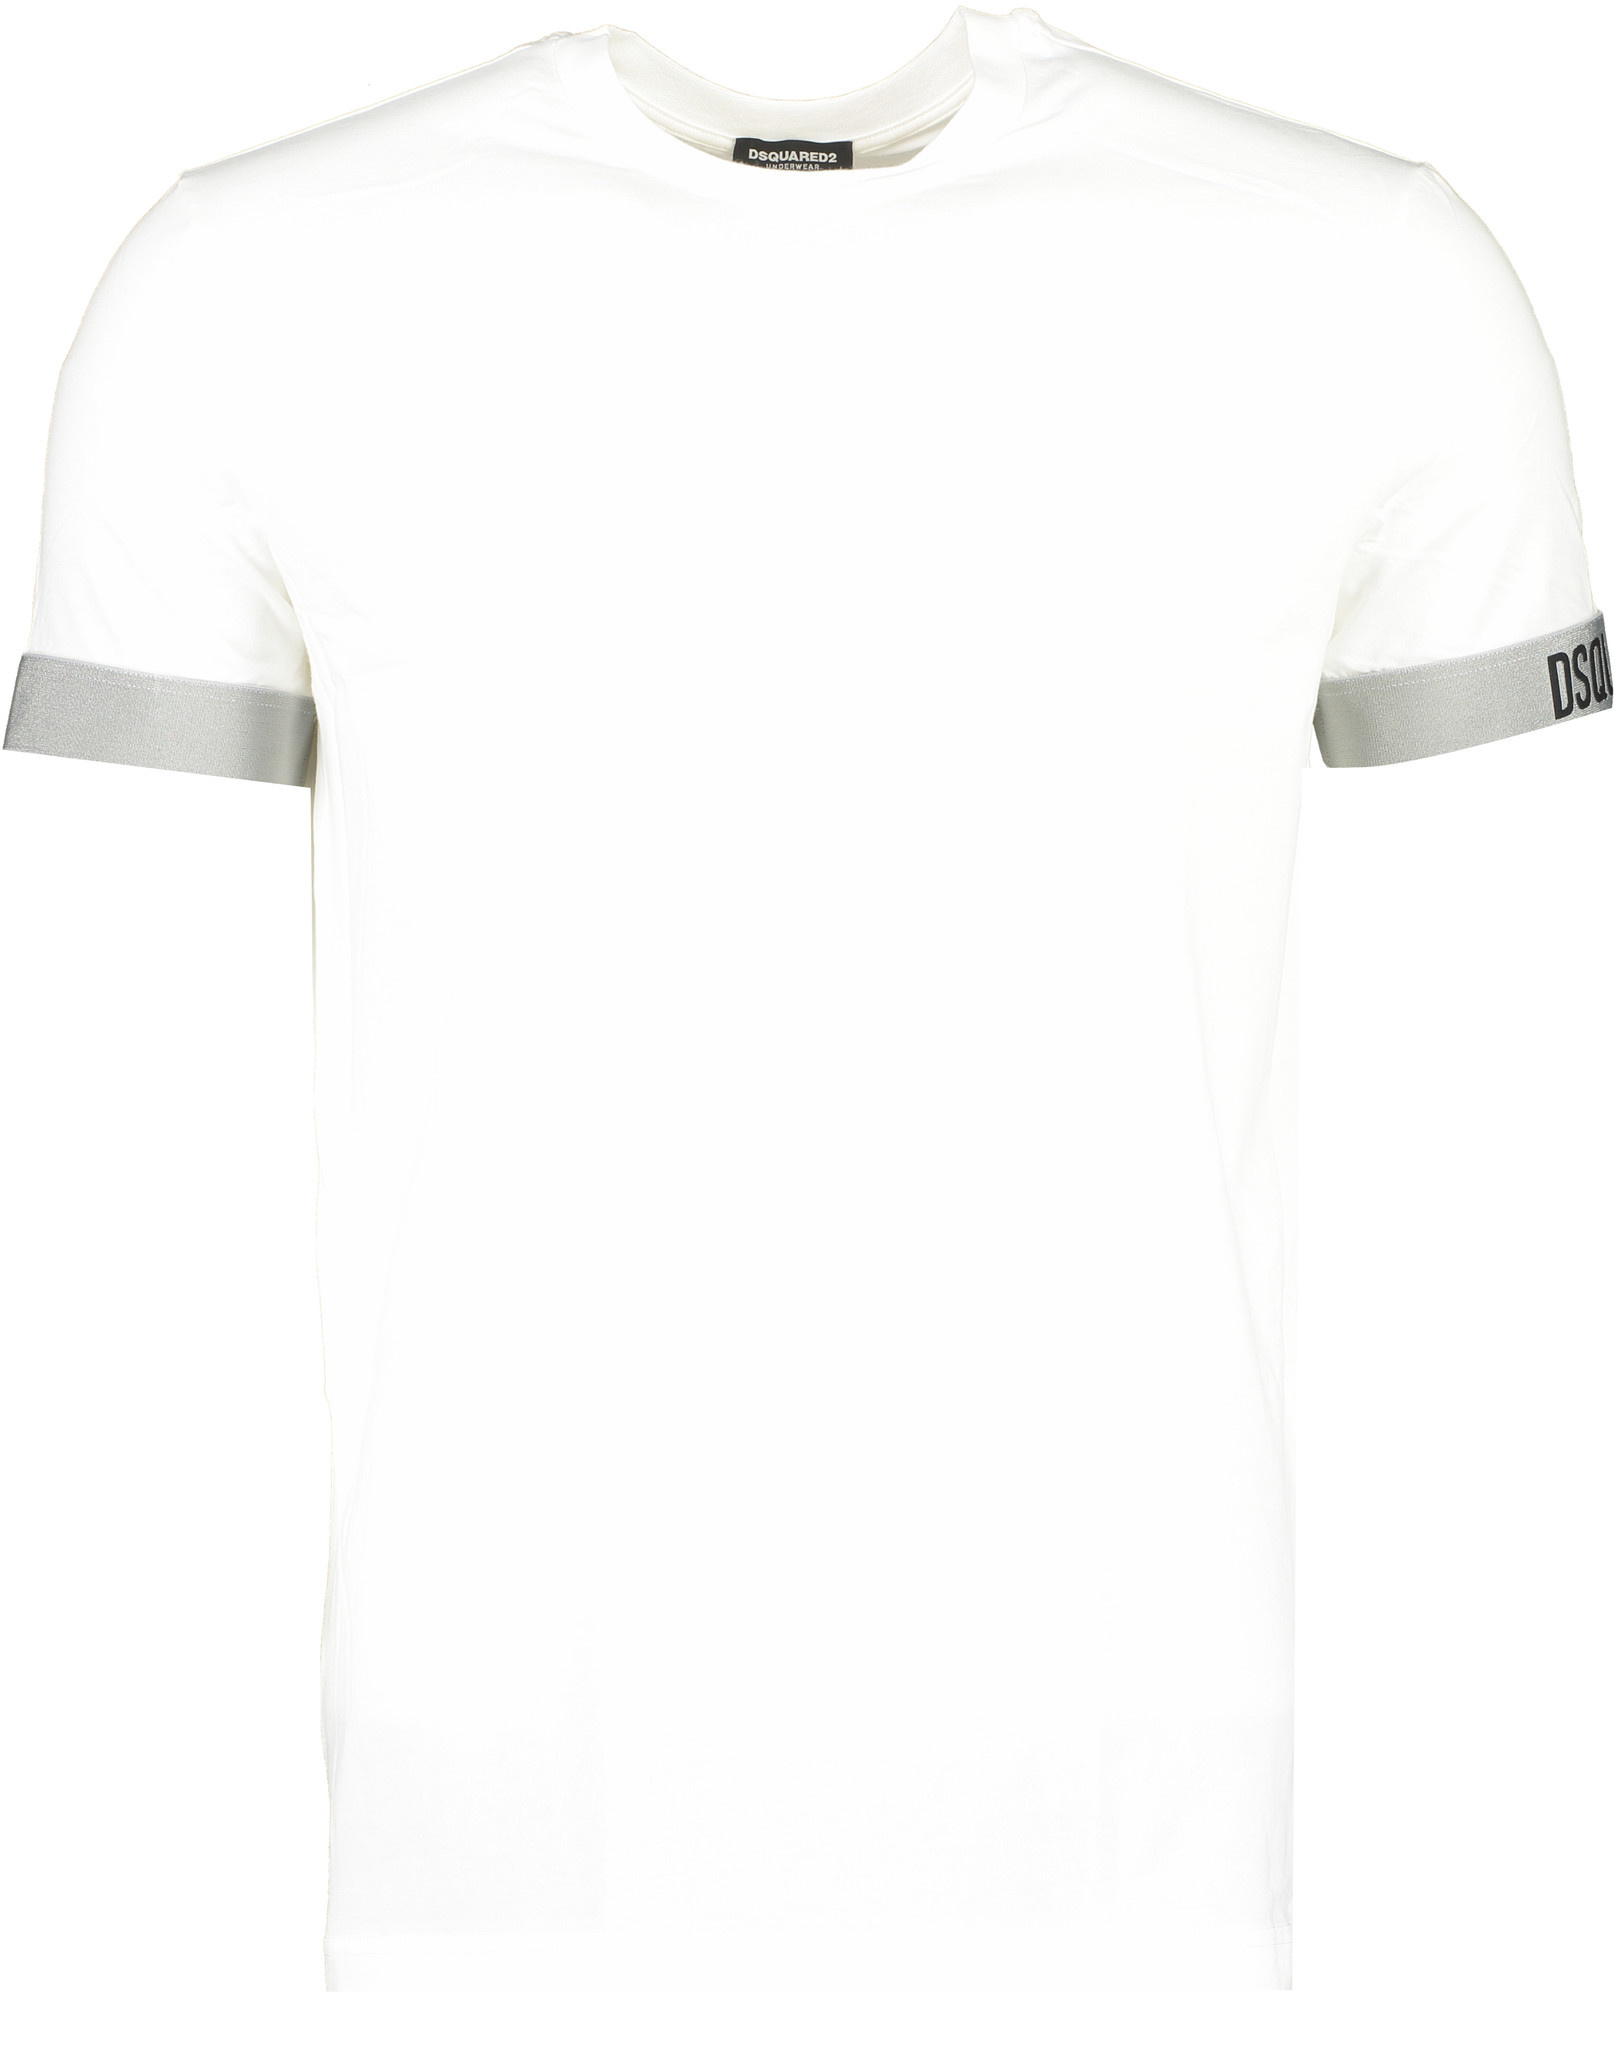 Sui stel voor Tientallen Dsquared T-Shirt Basic Side Logo FW21 White/Grey - Luna